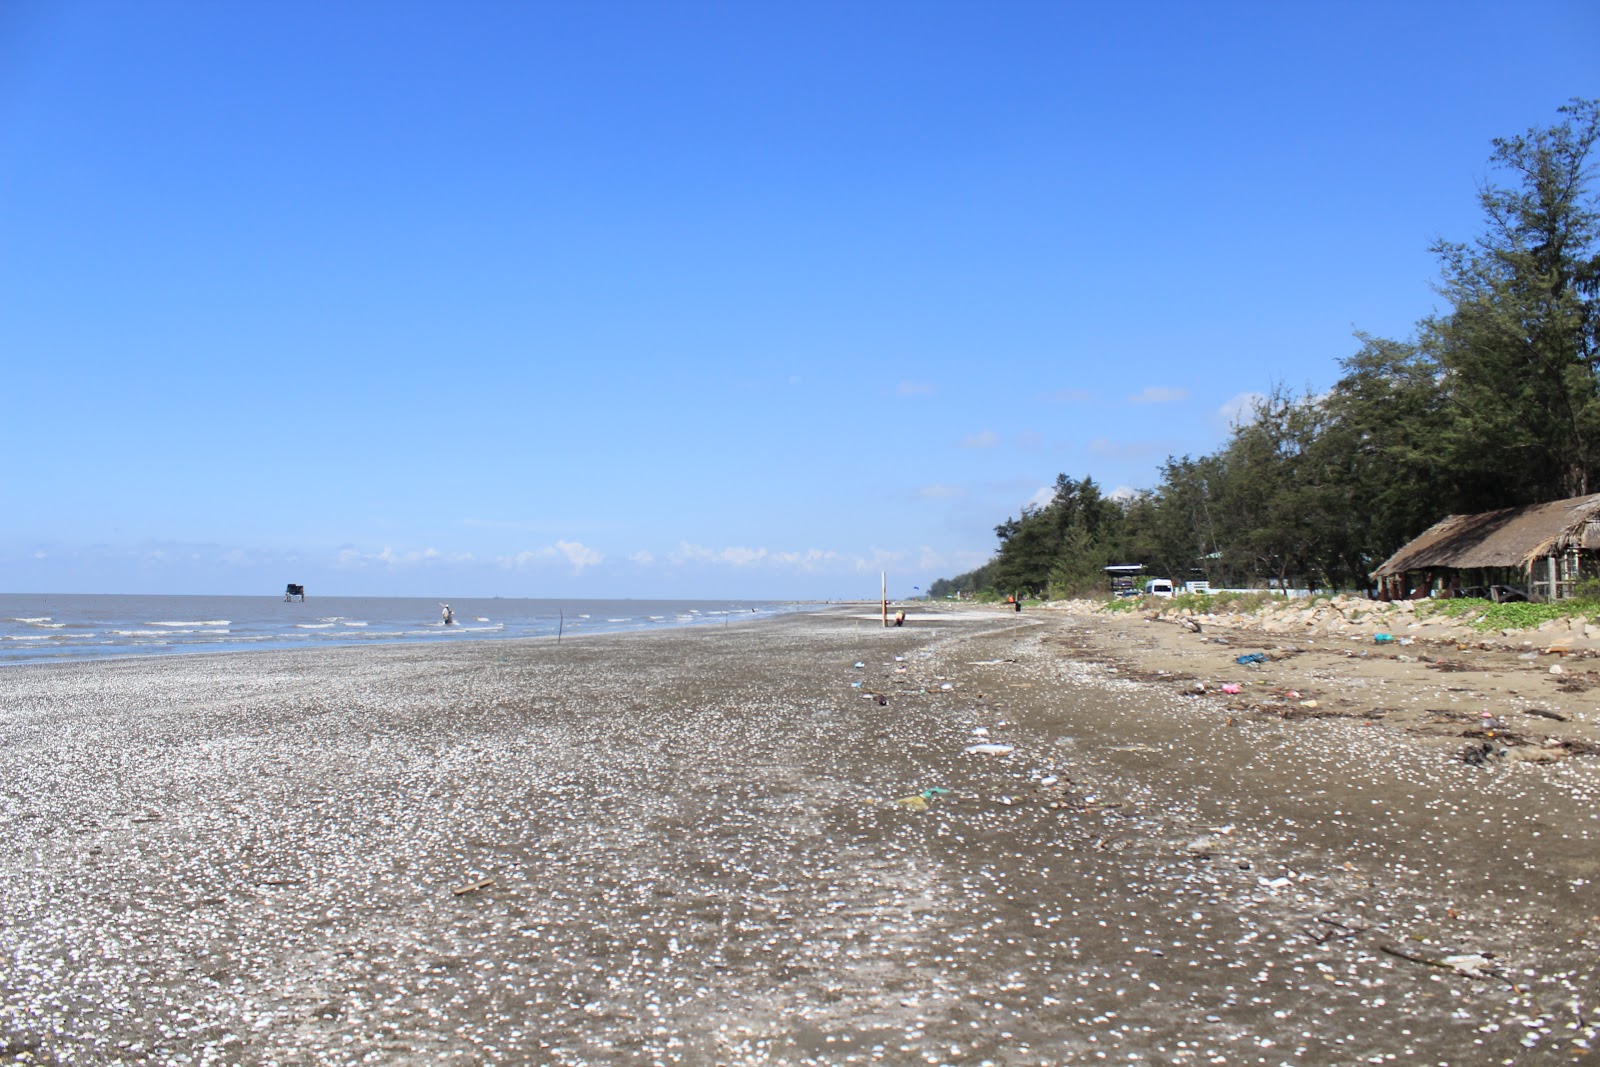 Can Gio Beach'in fotoğrafı doğal alan içinde bulunmaktadır